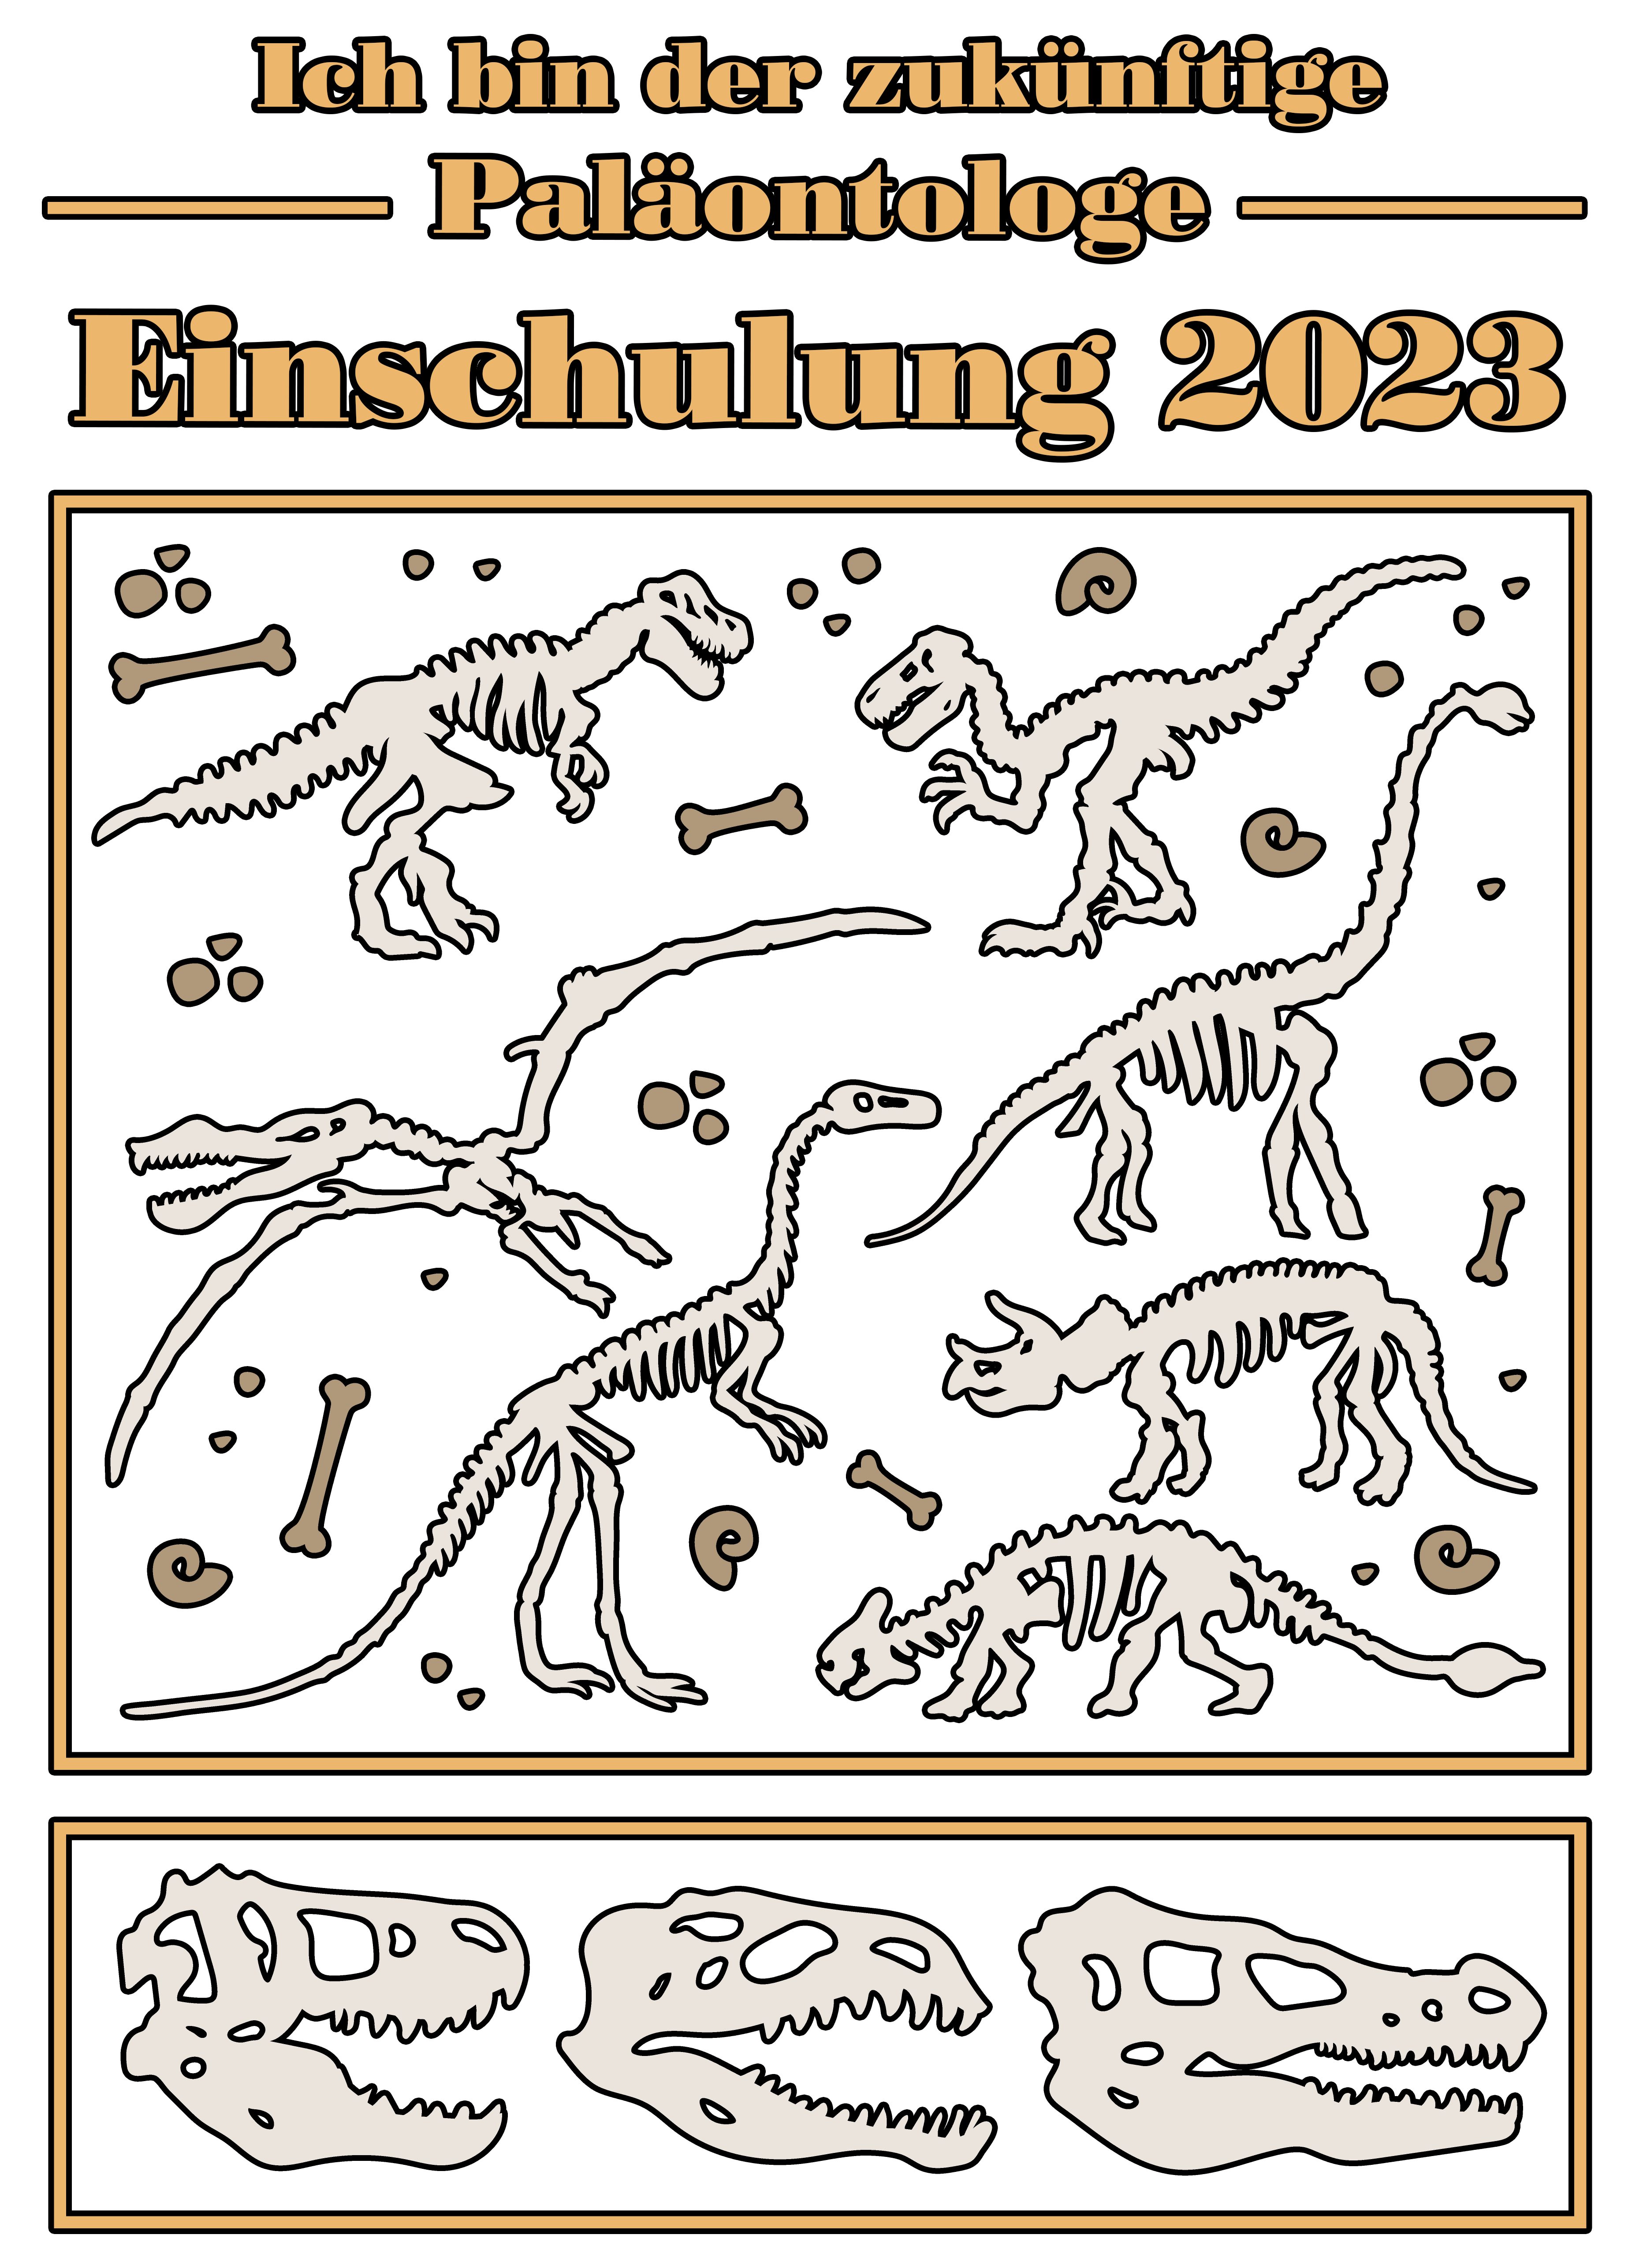 MyDesign24 Print-Shirt bedrucktes Kinder Baumwollshirt i36 2023, zukünftige Paläontologe T-Shirt blau, schwarz, Skeletten weiß, Einschulung rot, mit Dino